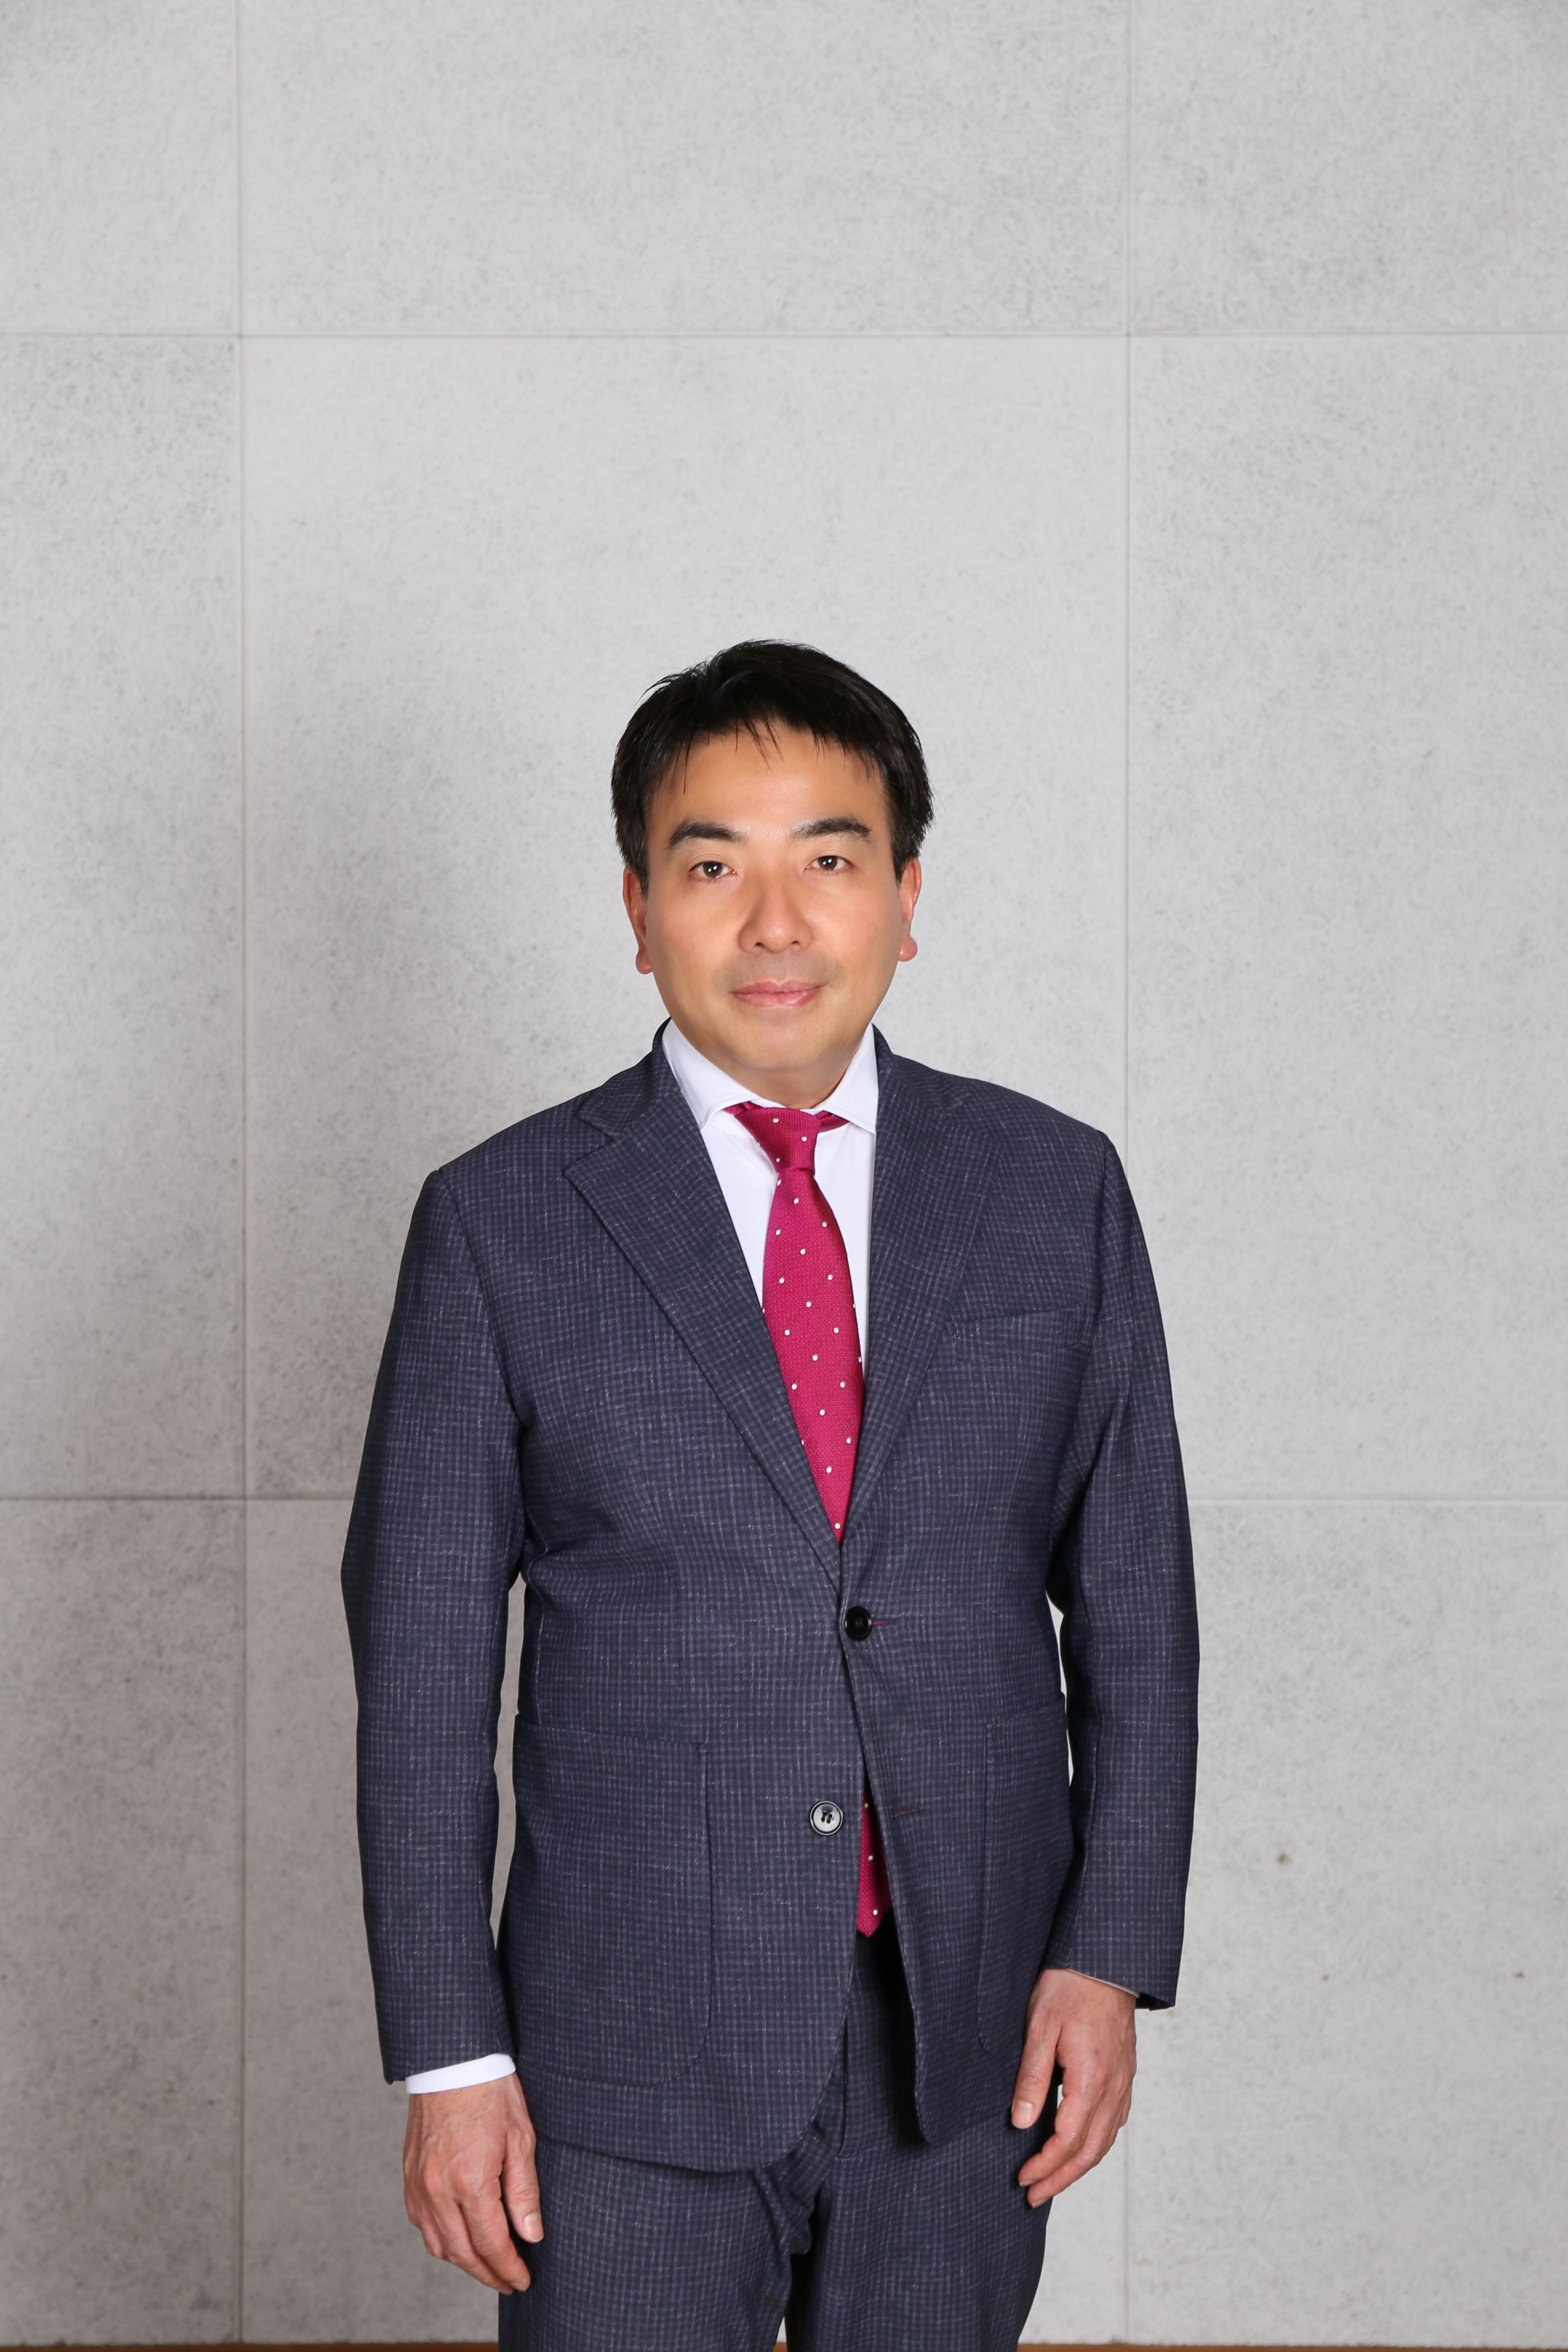 代表の園田氏。
電通、MBA、投資銀行からインターネット業界という経歴を持つ。